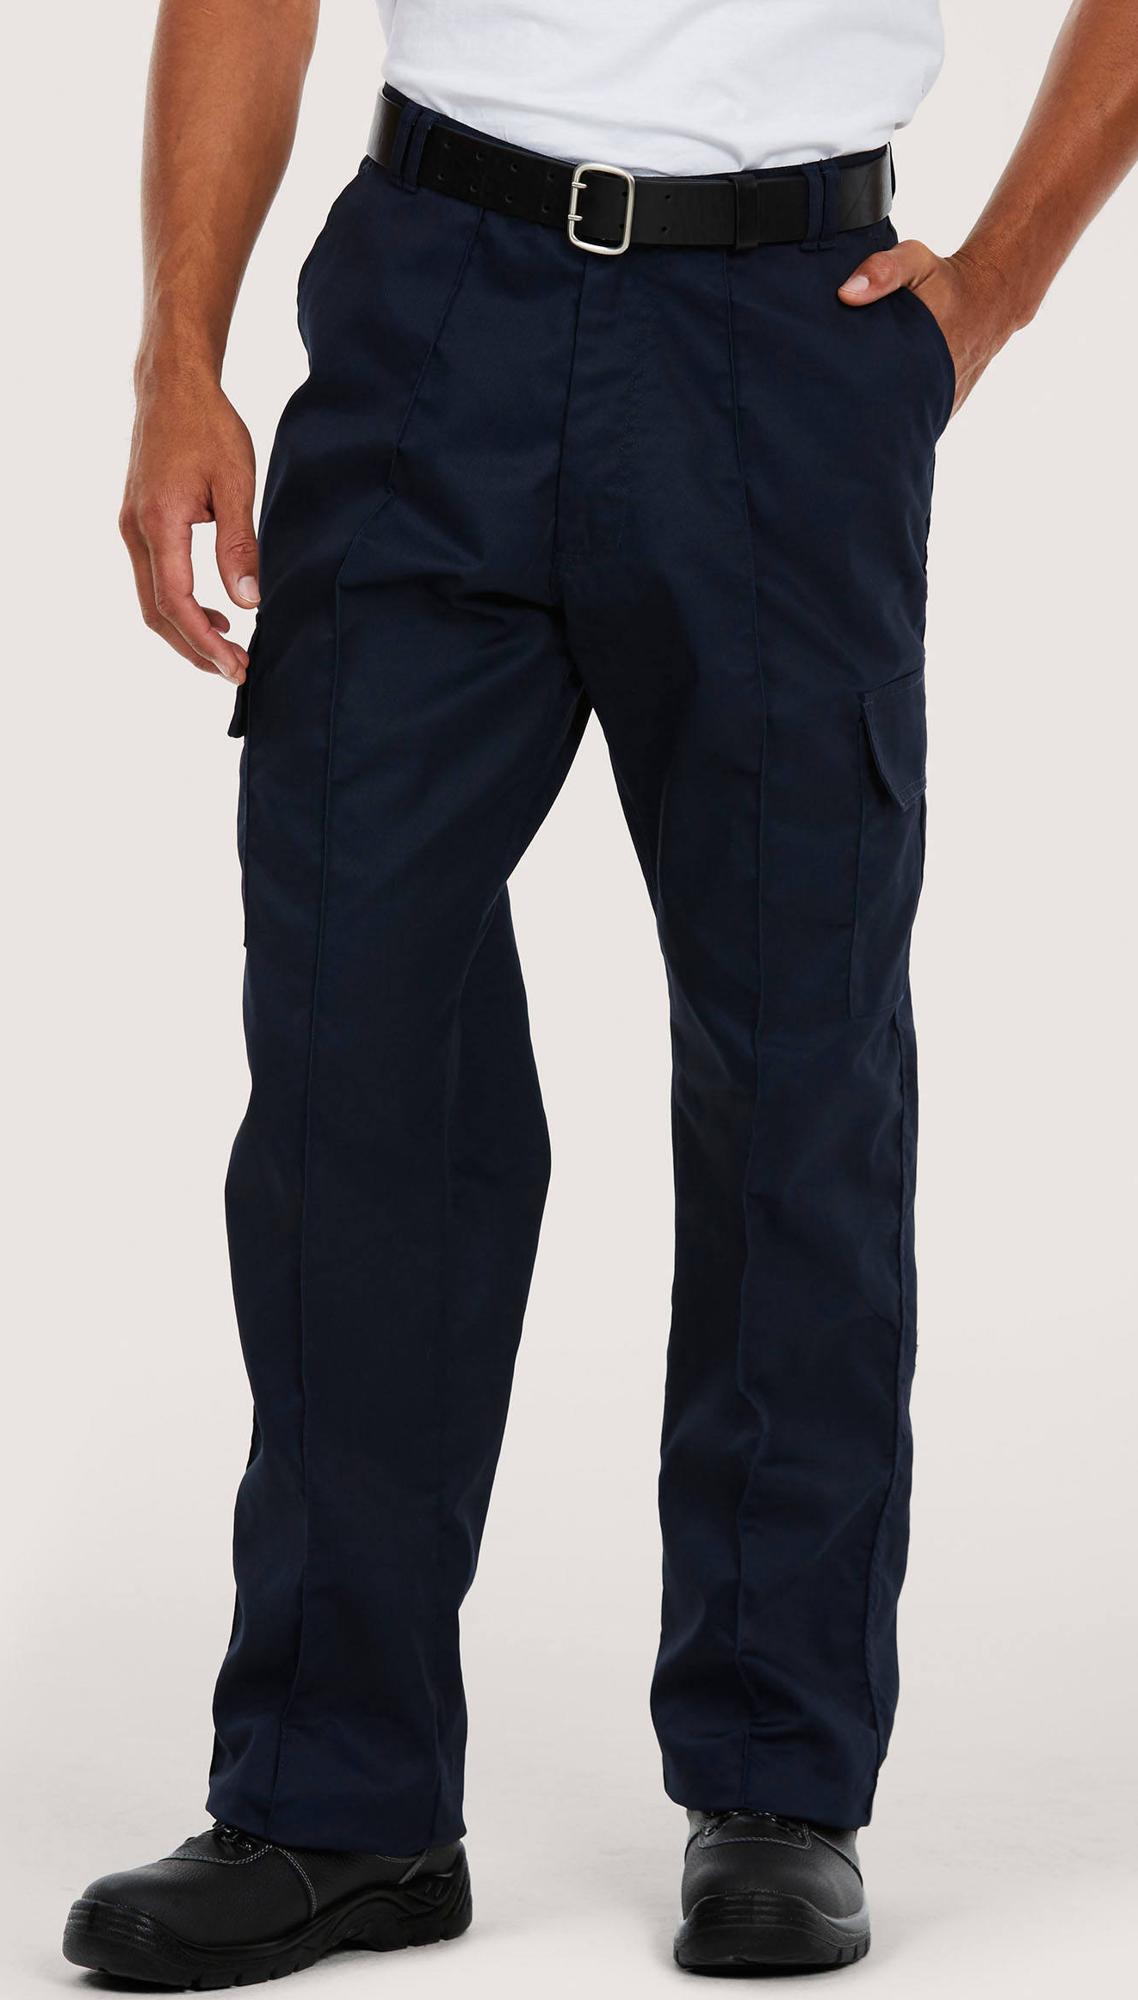 Buy Mens Combat Cargo Work Mechanic Trousers Pant Black Long Short Regular  Online at desertcartINDIA